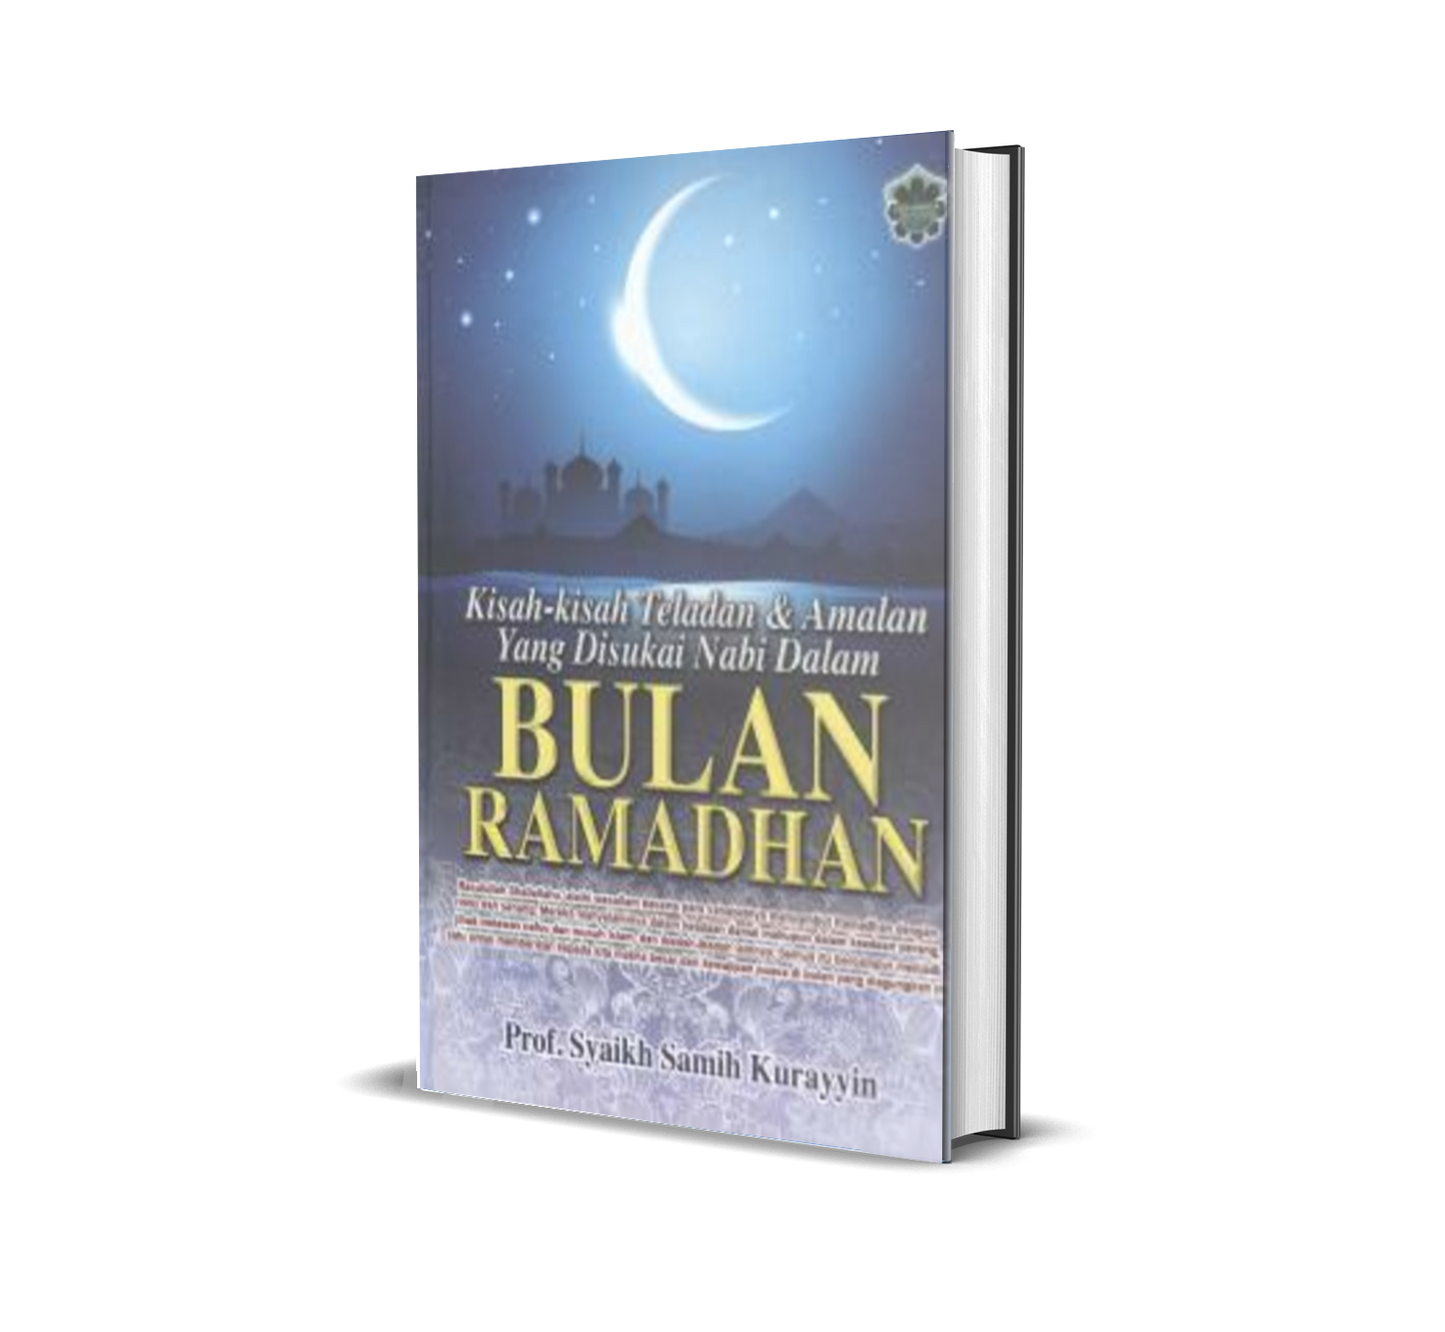 Kisah-kisah Teladan & Amalan Yang Disukai Nabi Dalam Bulan Ramadhan